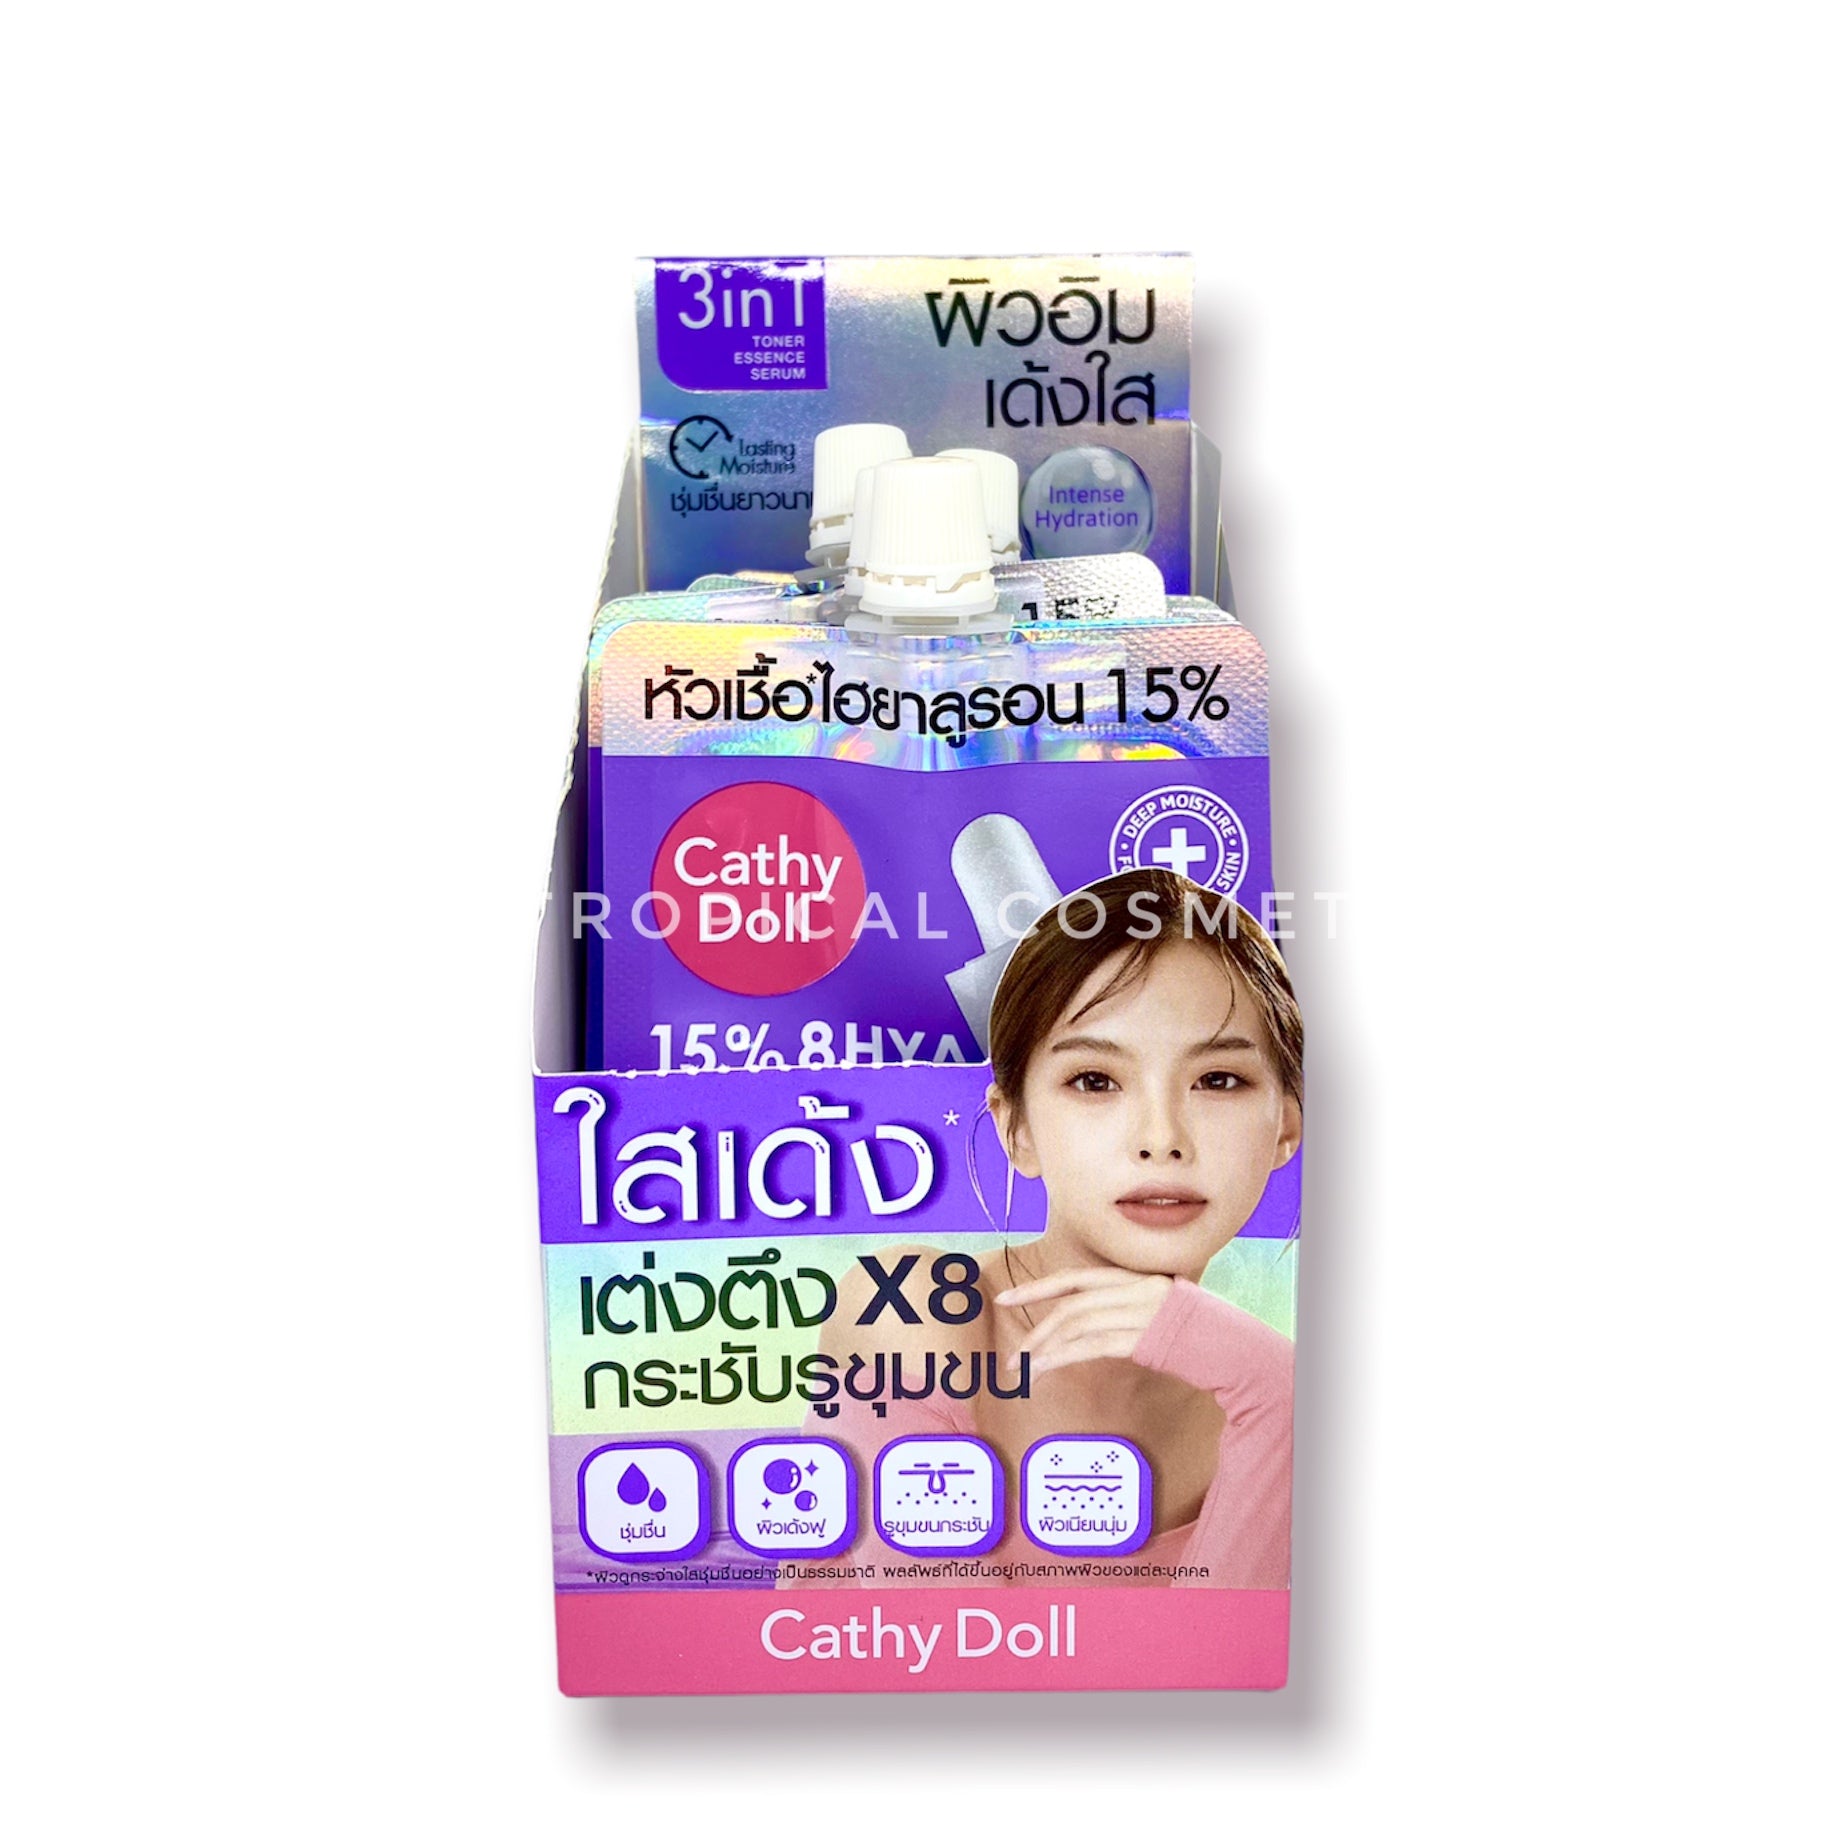 Karmart Cathy Doll 15% 8HYA Ampoule 6 pcs*6 ml., Концентрированная ампульная сыворотка с высоким содержанием 15% 8 различных молекул гиалуроновой кислоты 6 шт.*6 мл.